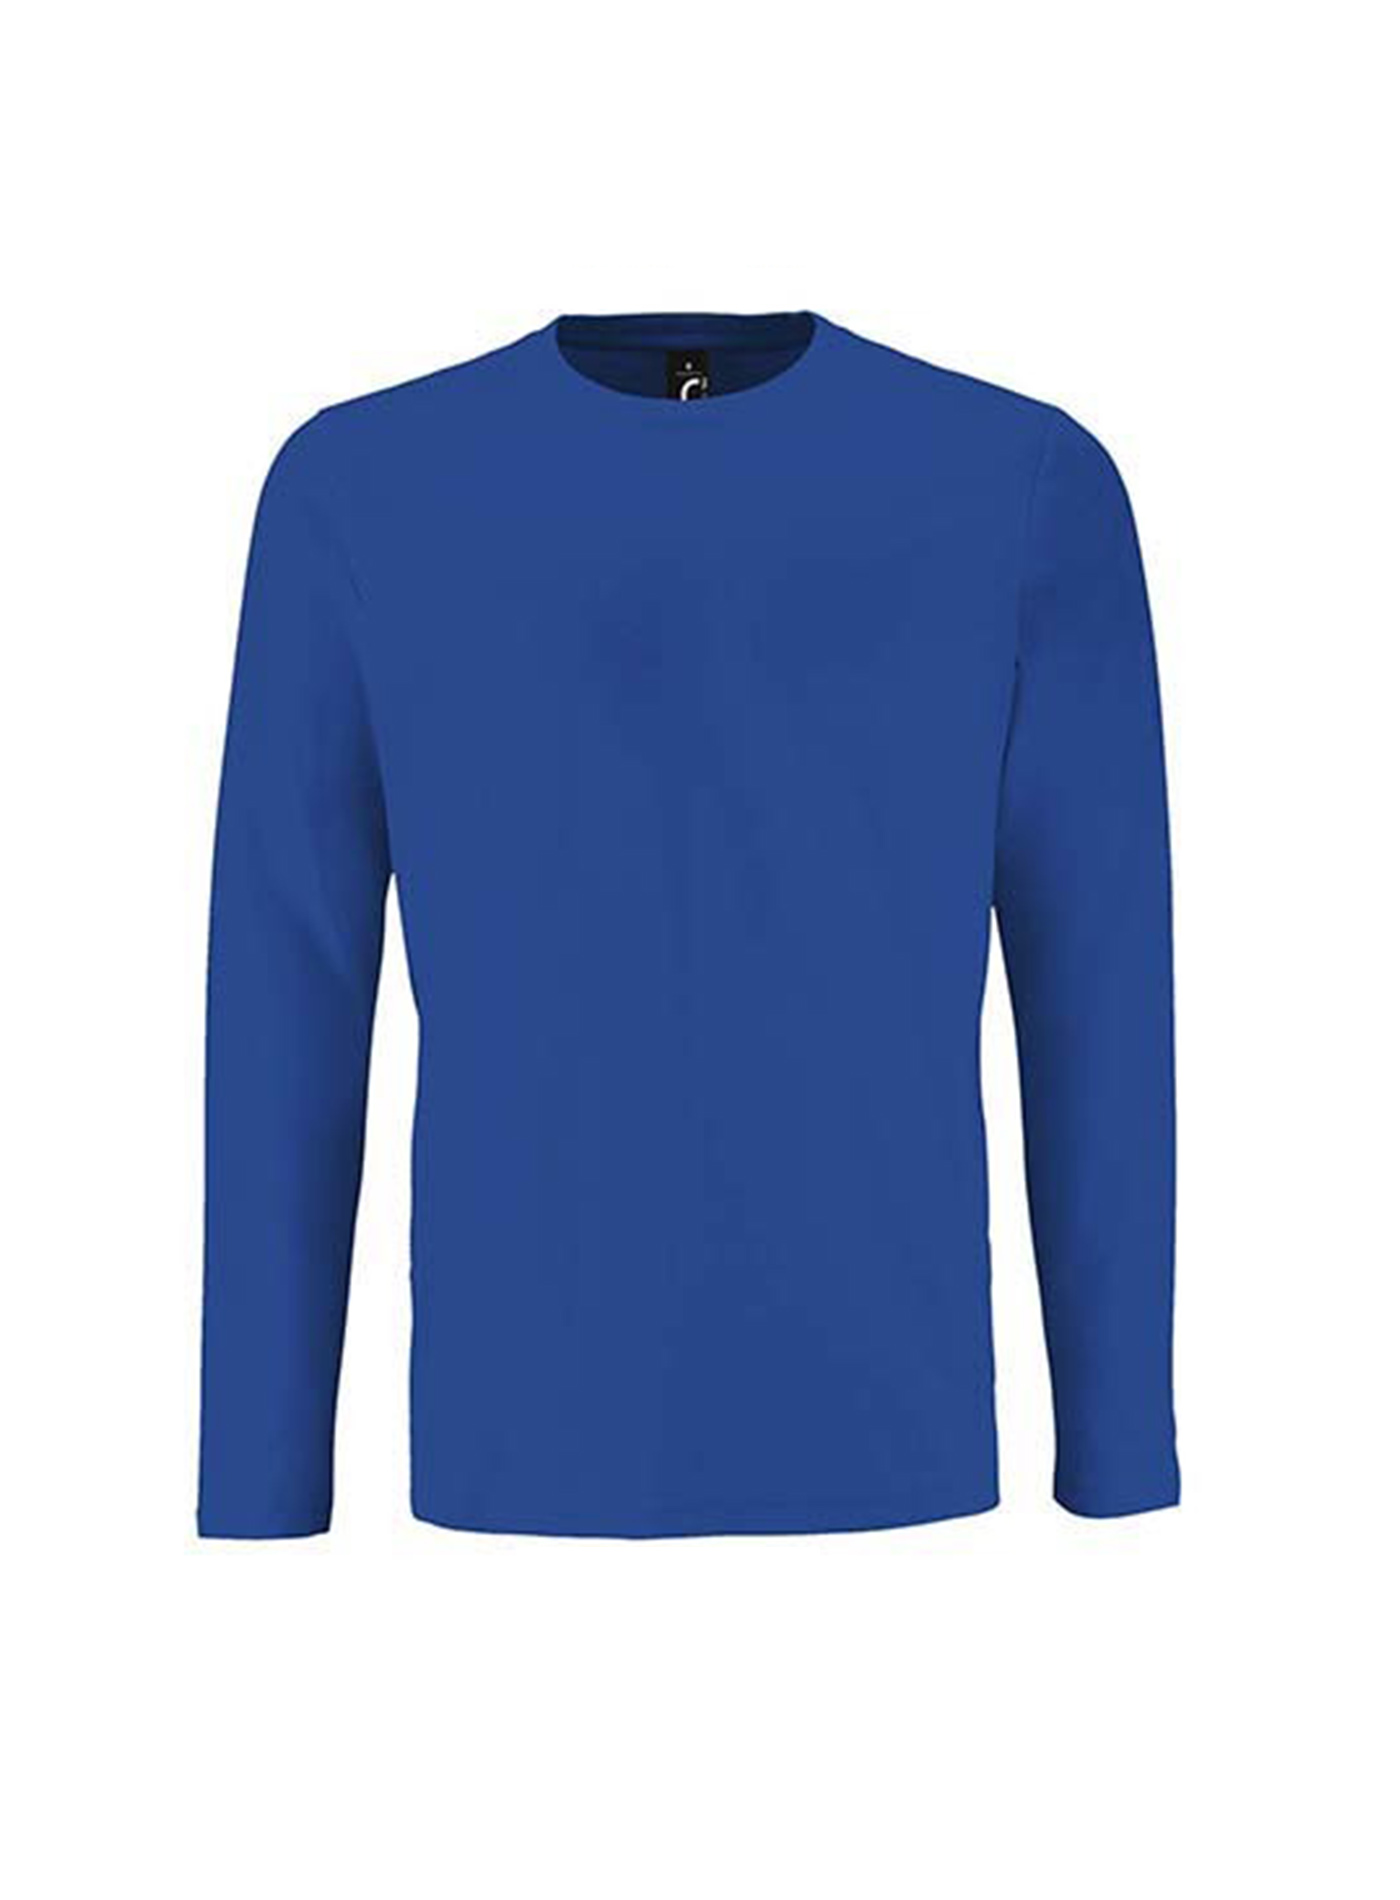 Pánské tričko s dlouhým rukávem SOL´S Imperial - Královská modrá XL